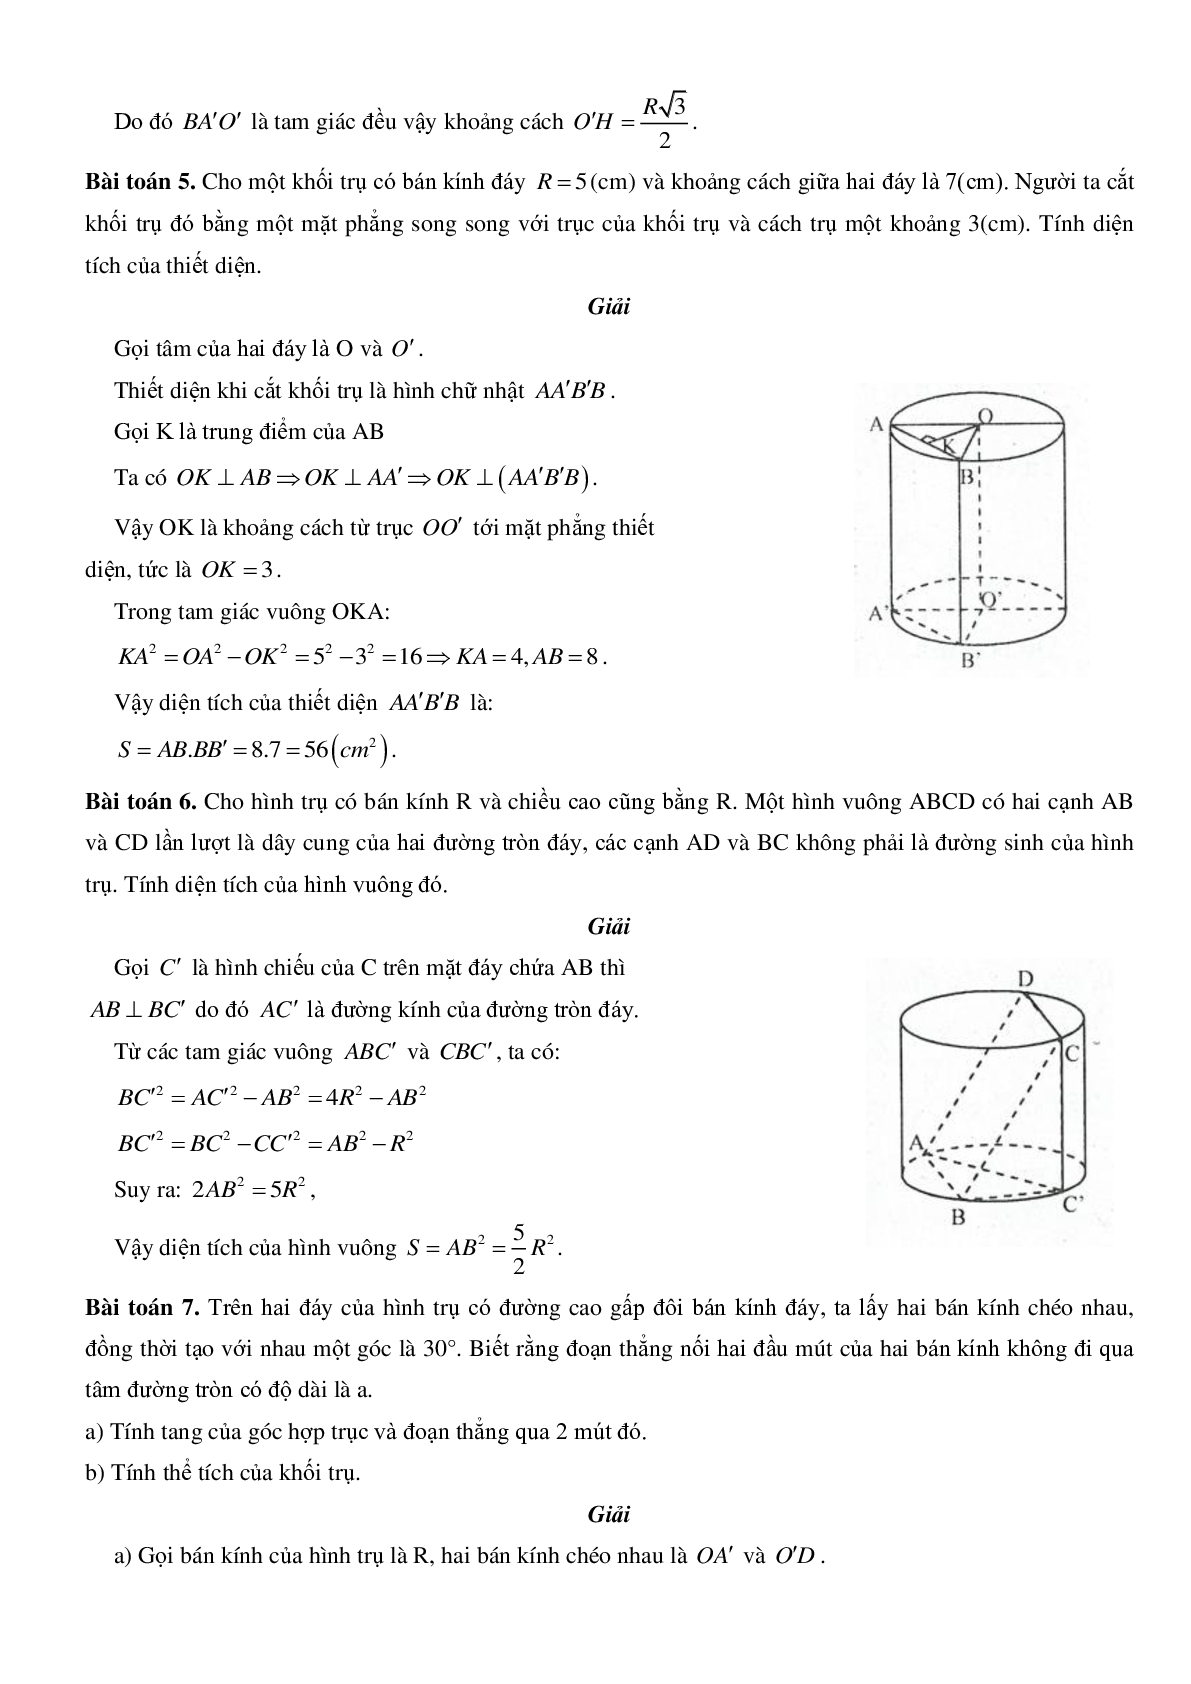 Mặt trụ - Hình trụ - Khối trụ - Ôn thi THPT QG môn toán (trang 3)